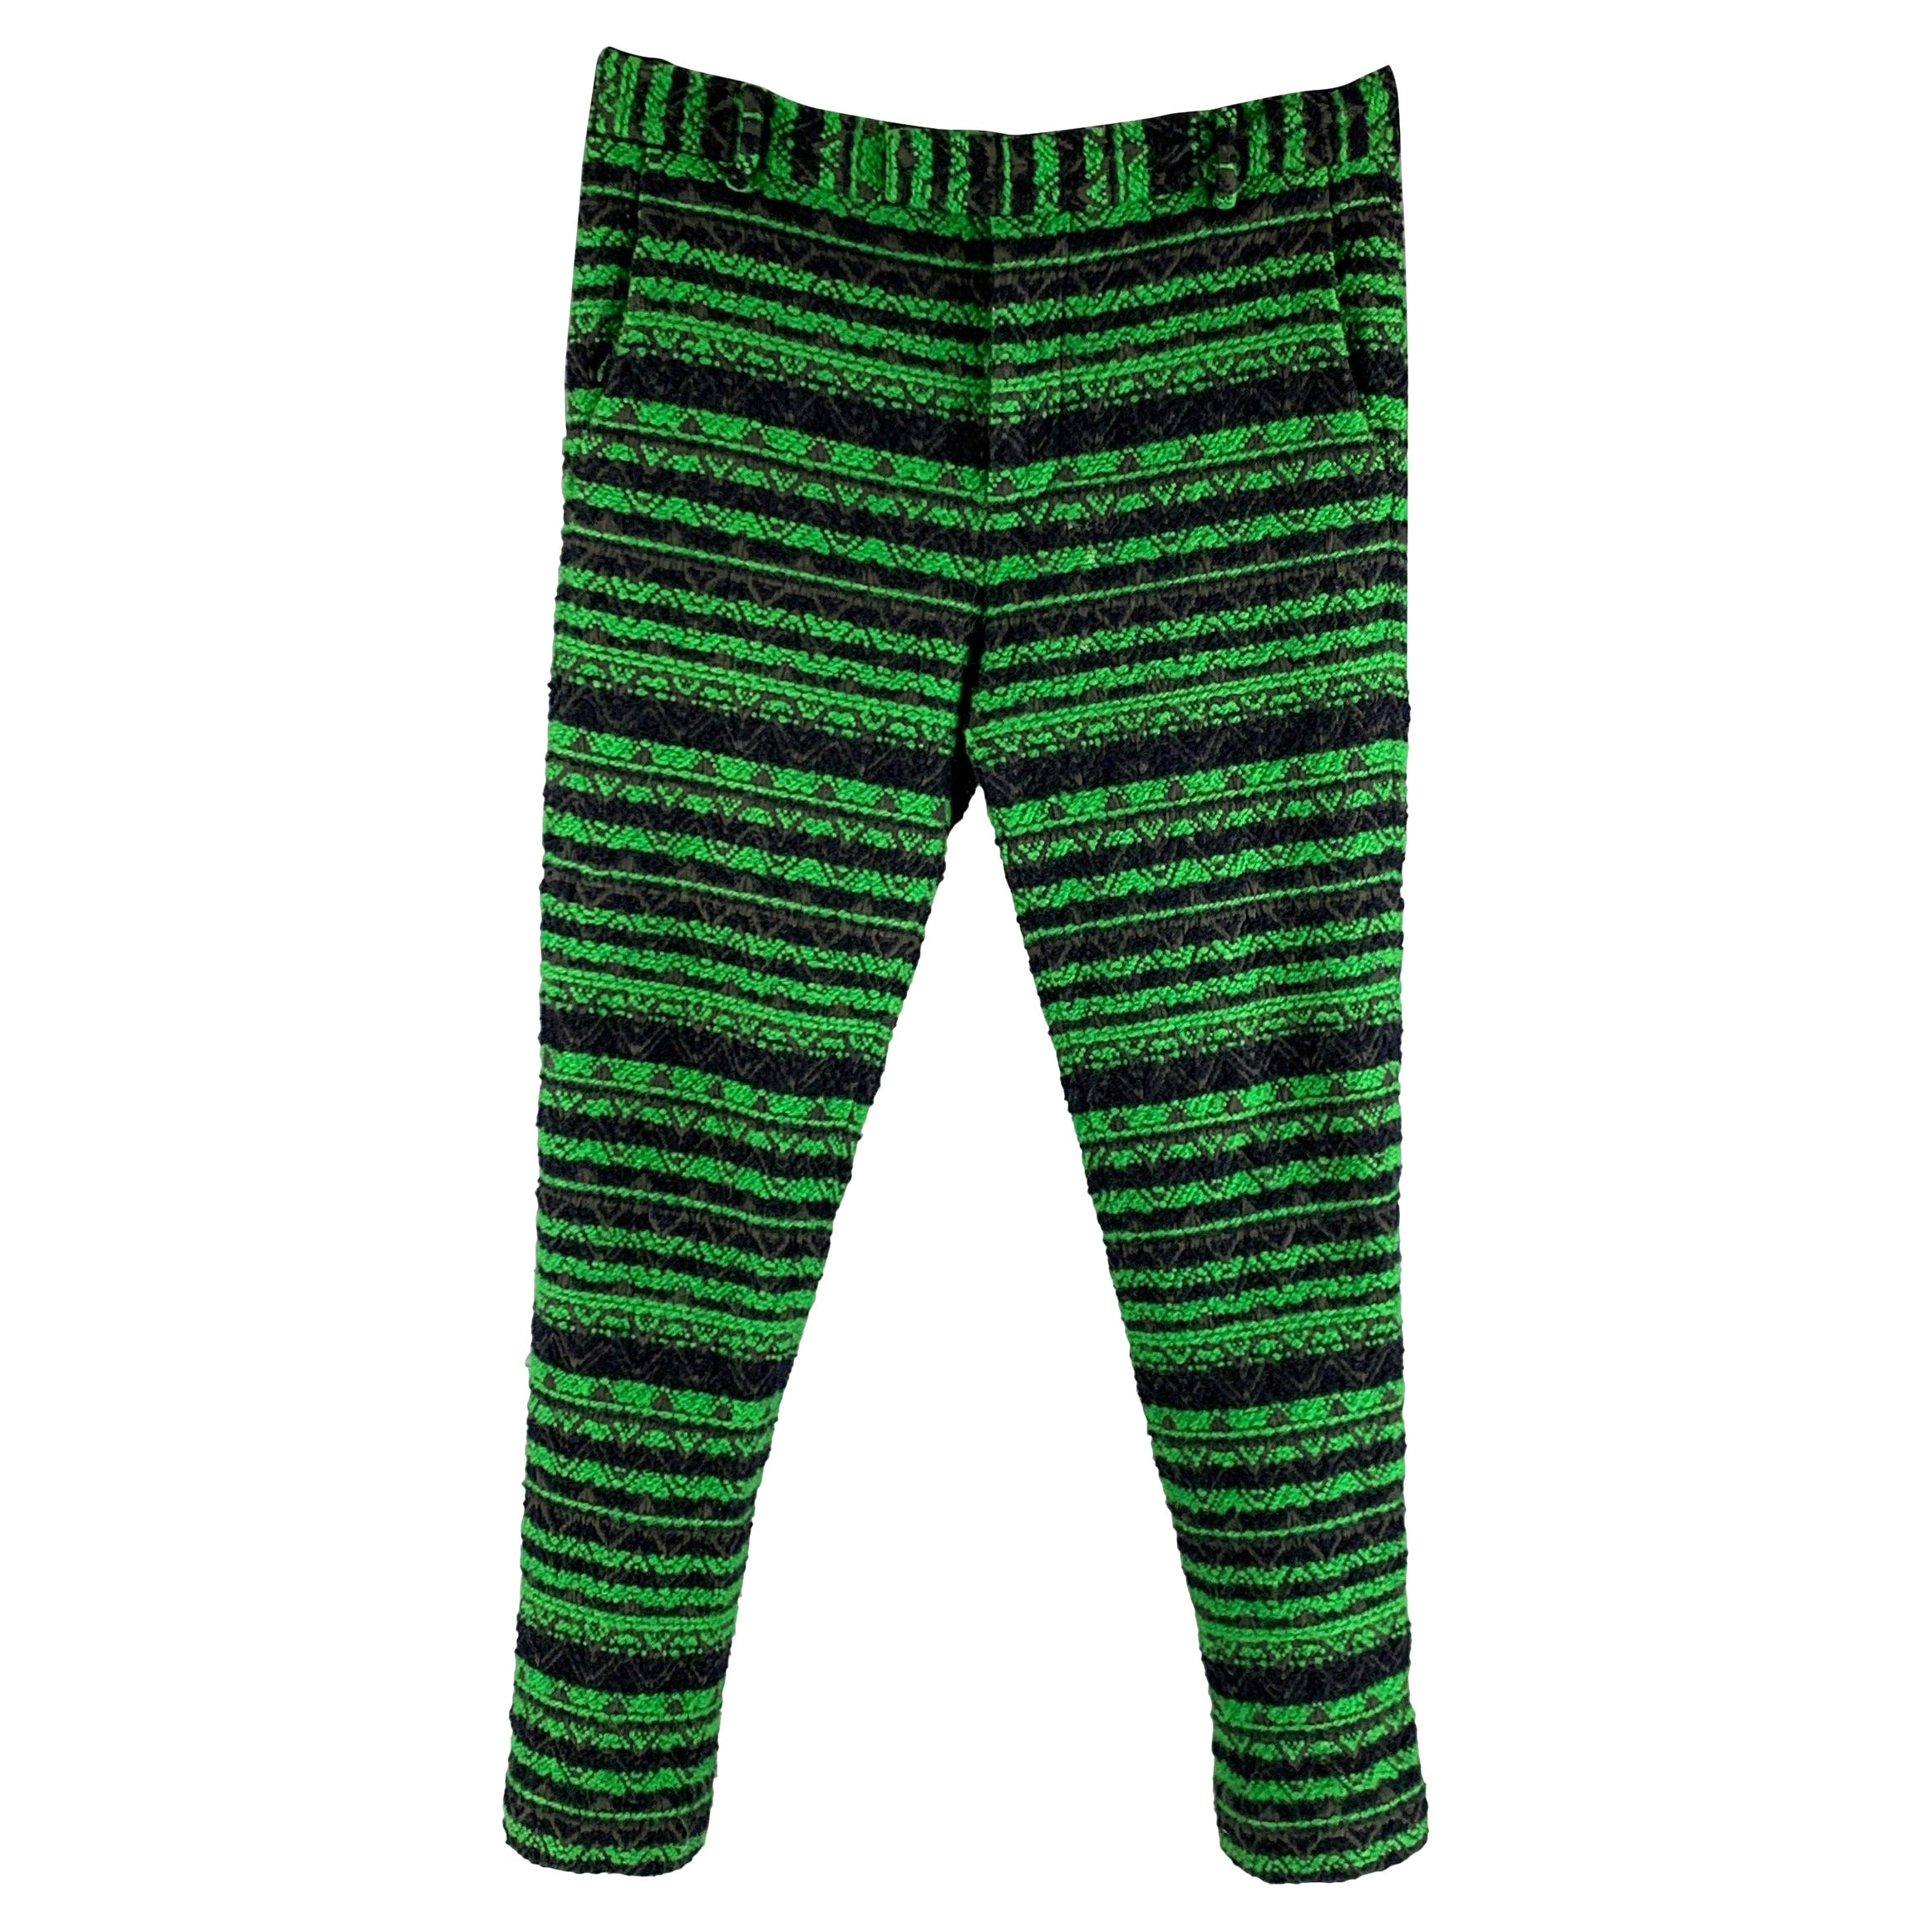 3.1 Phillip Lim Taille 32 Pantalon habillé en coton, laine et tweed noir et vert avec fermeture éclair en vente